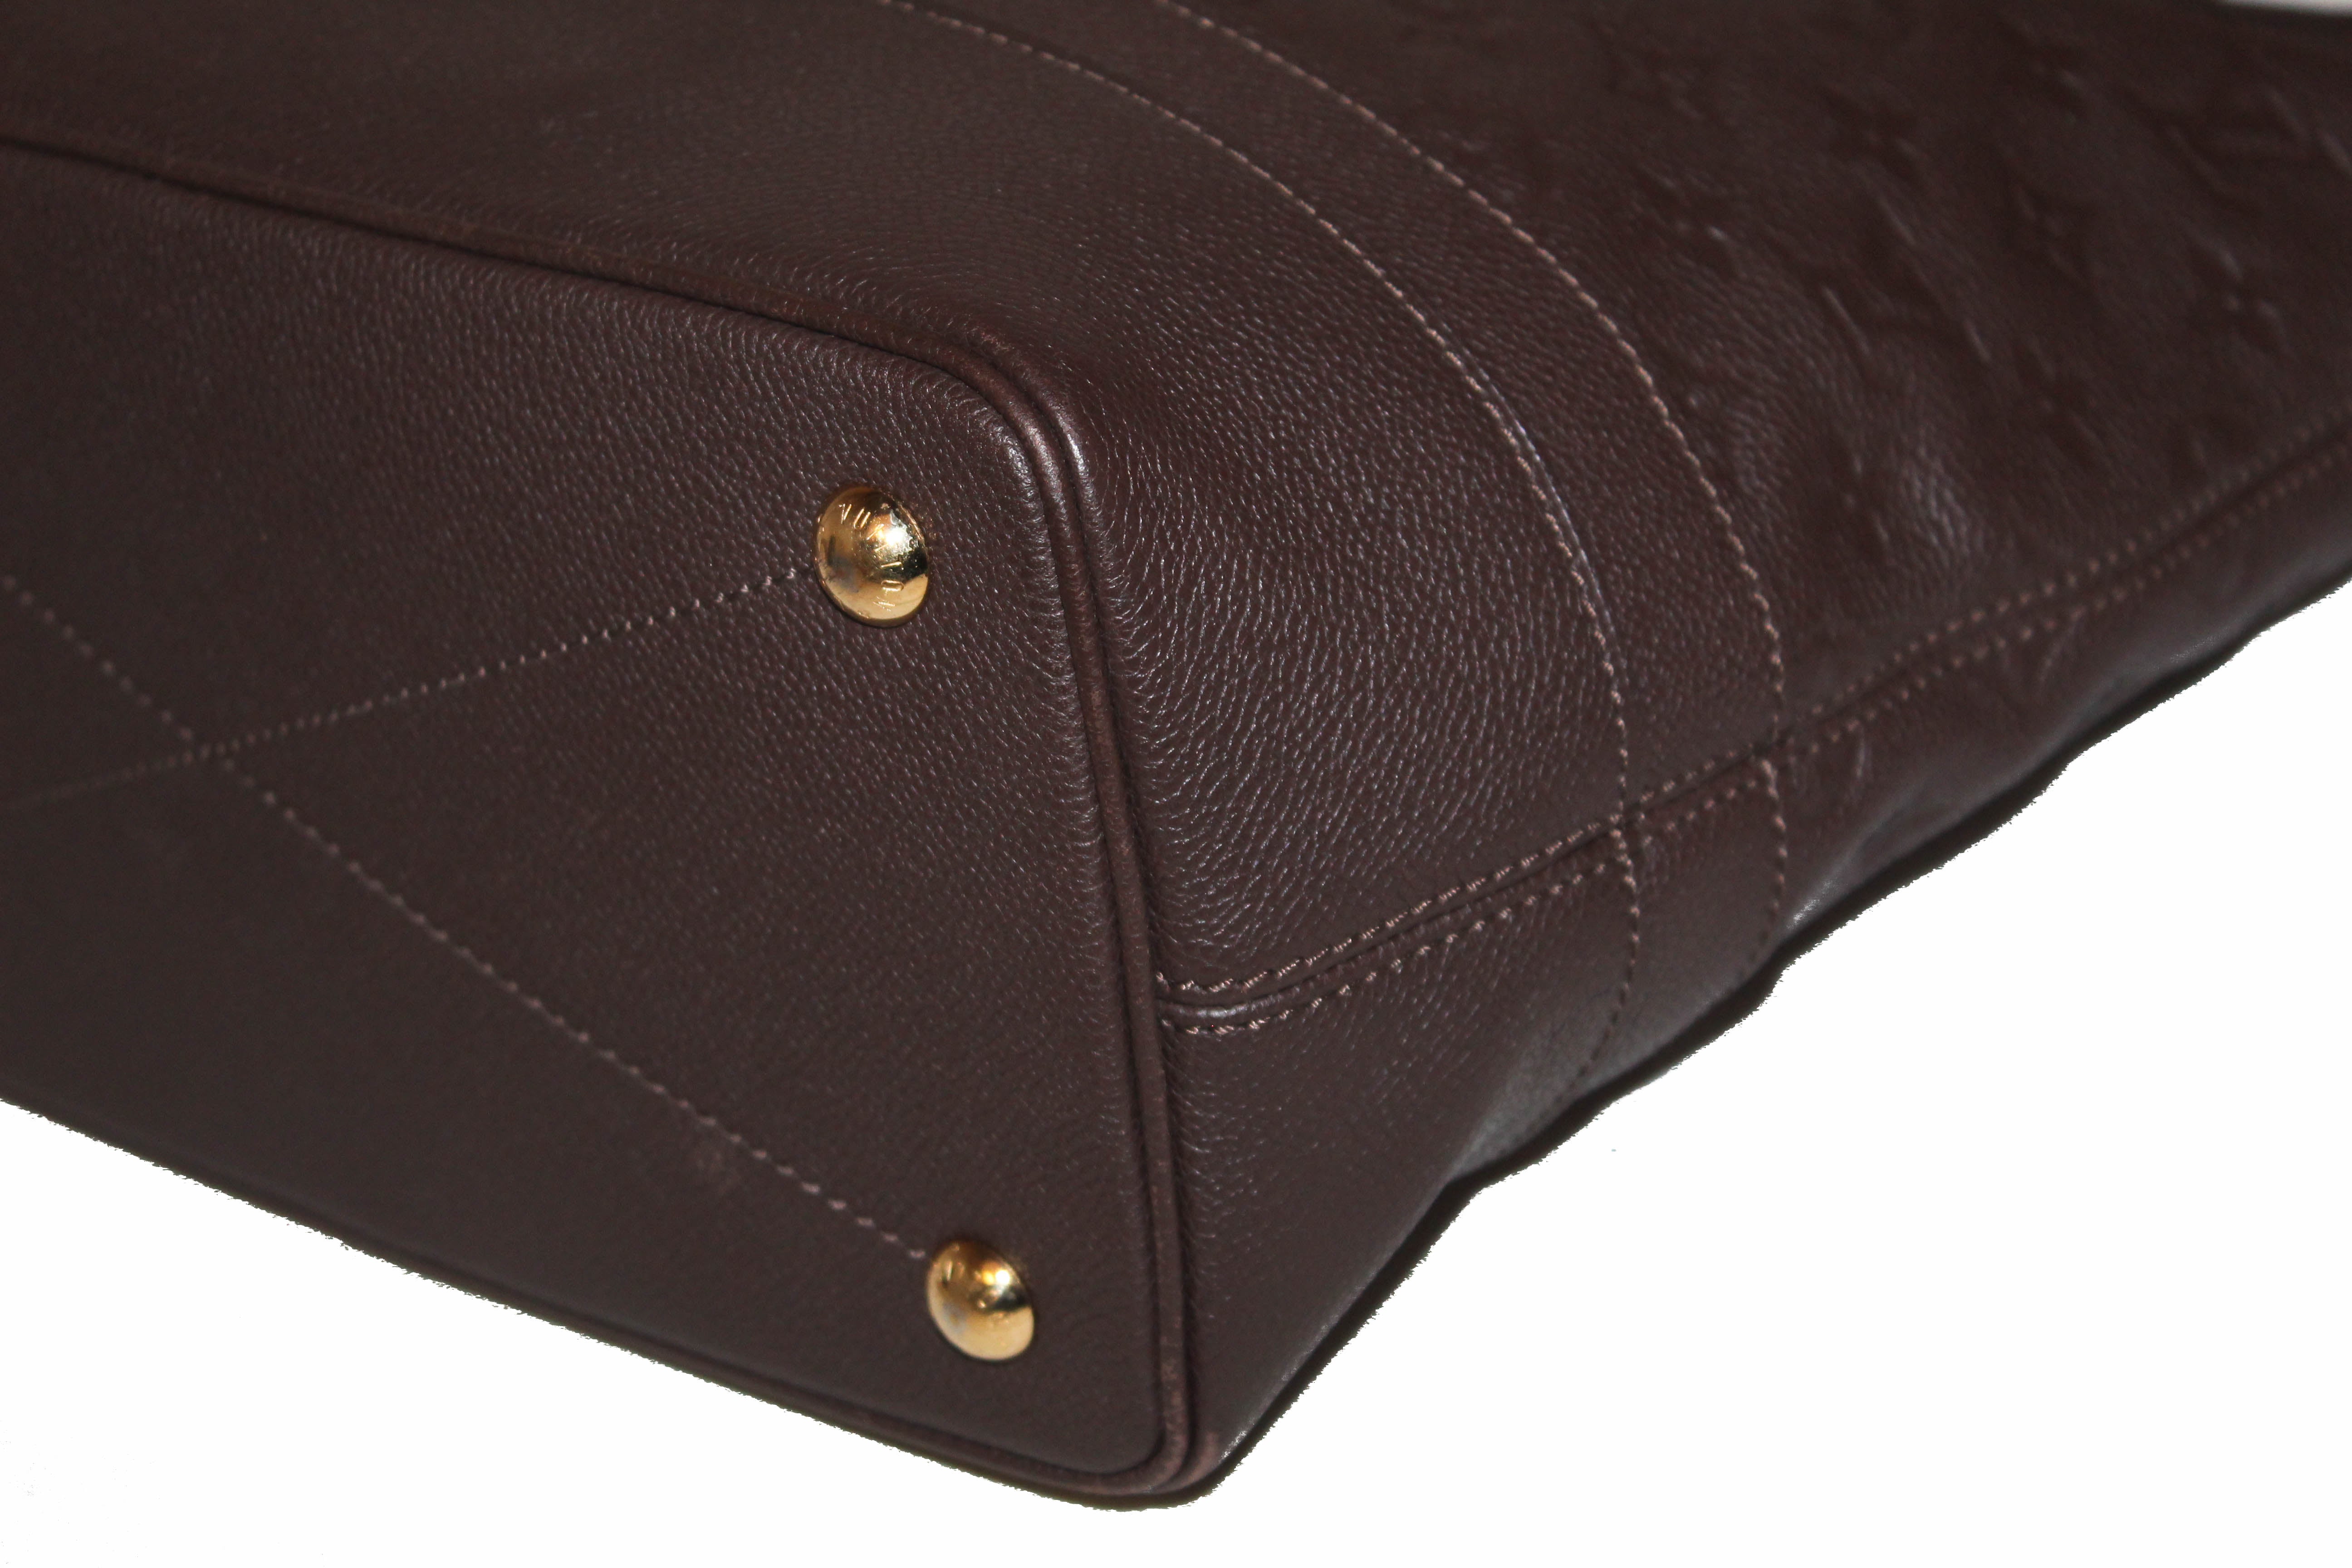 Louis Vuitton Citadine PM M40556 Monogram Empreinte Leather Tote Bag Orient